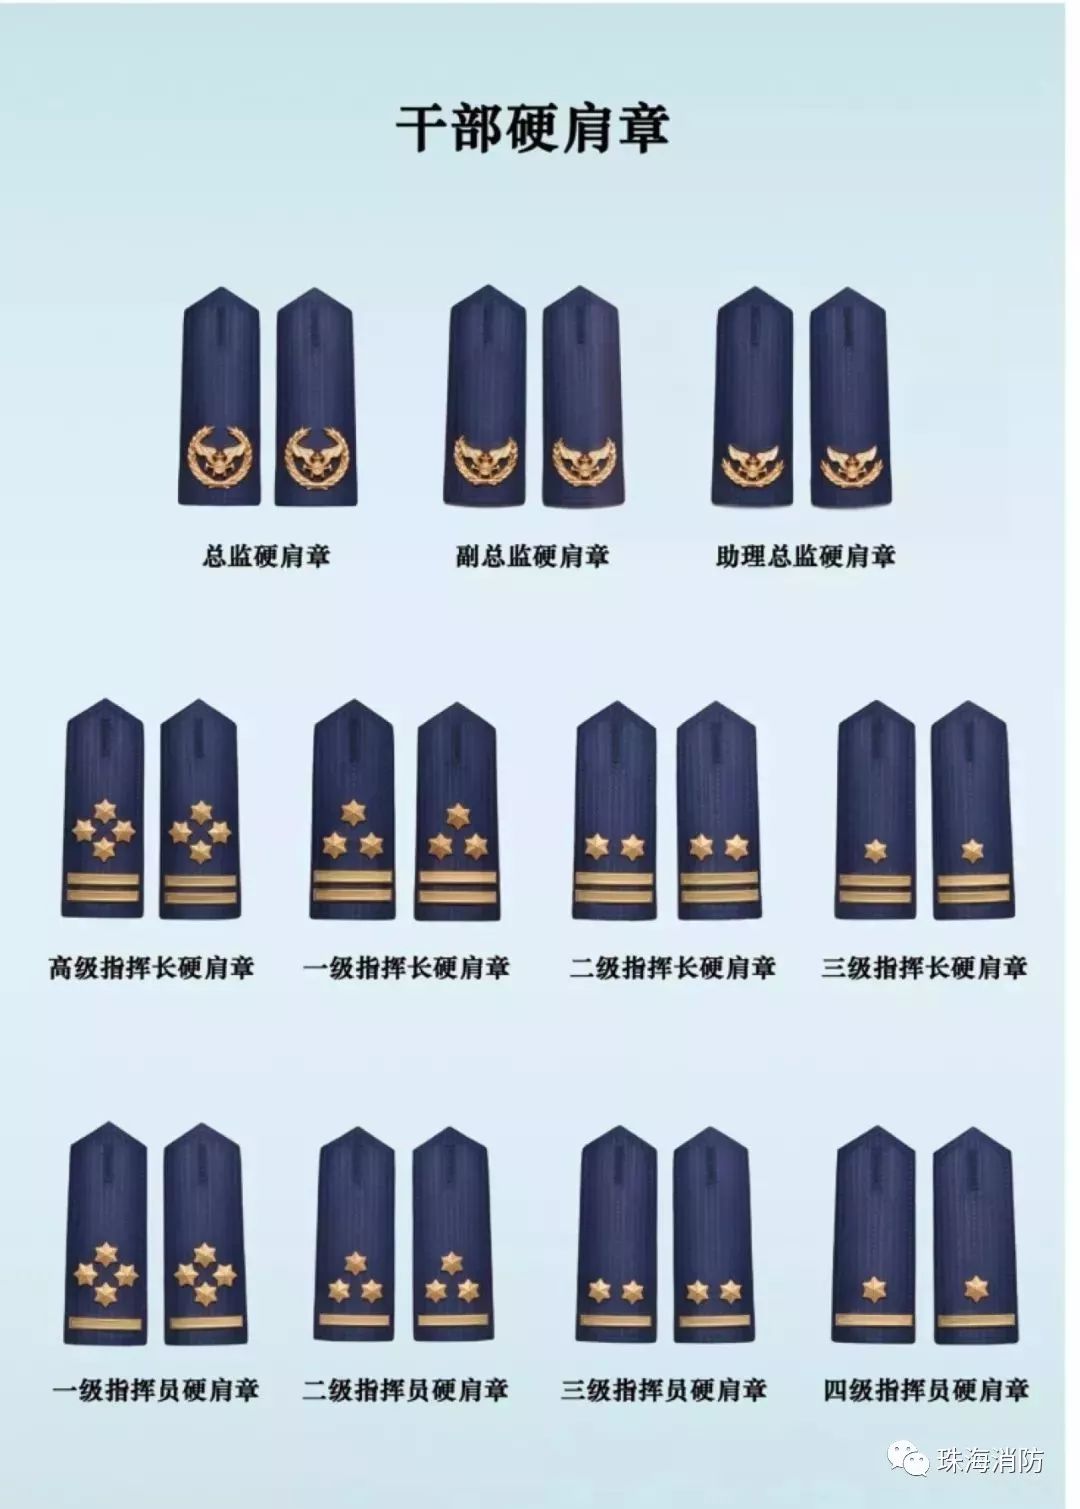 海事局制服肩章级别图片